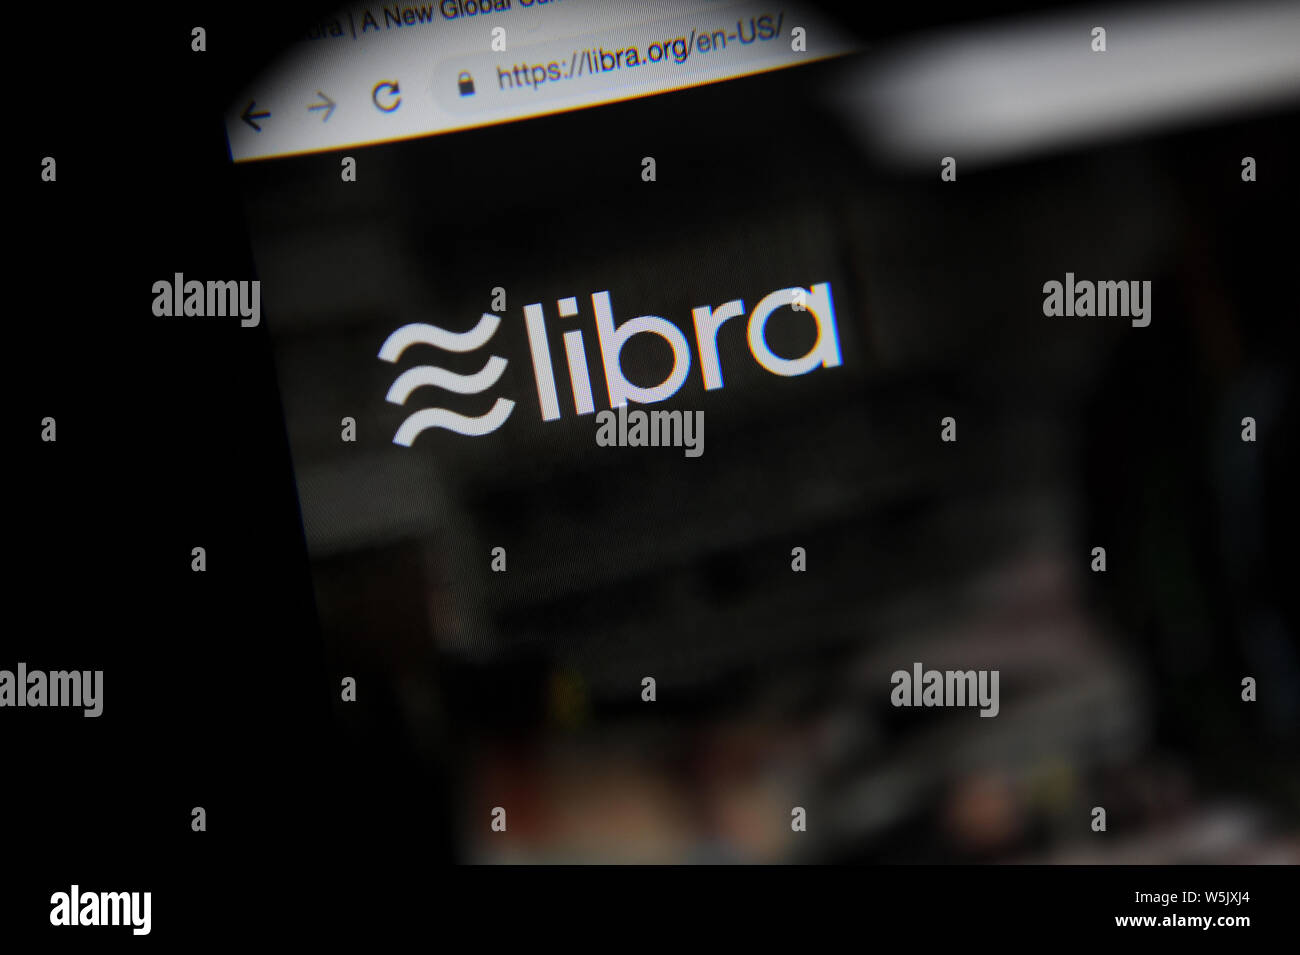 El libra cryptocurrency website vistos a través de una lupa, Libra está siendo desarrollado por Facebook Inc. Foto de stock